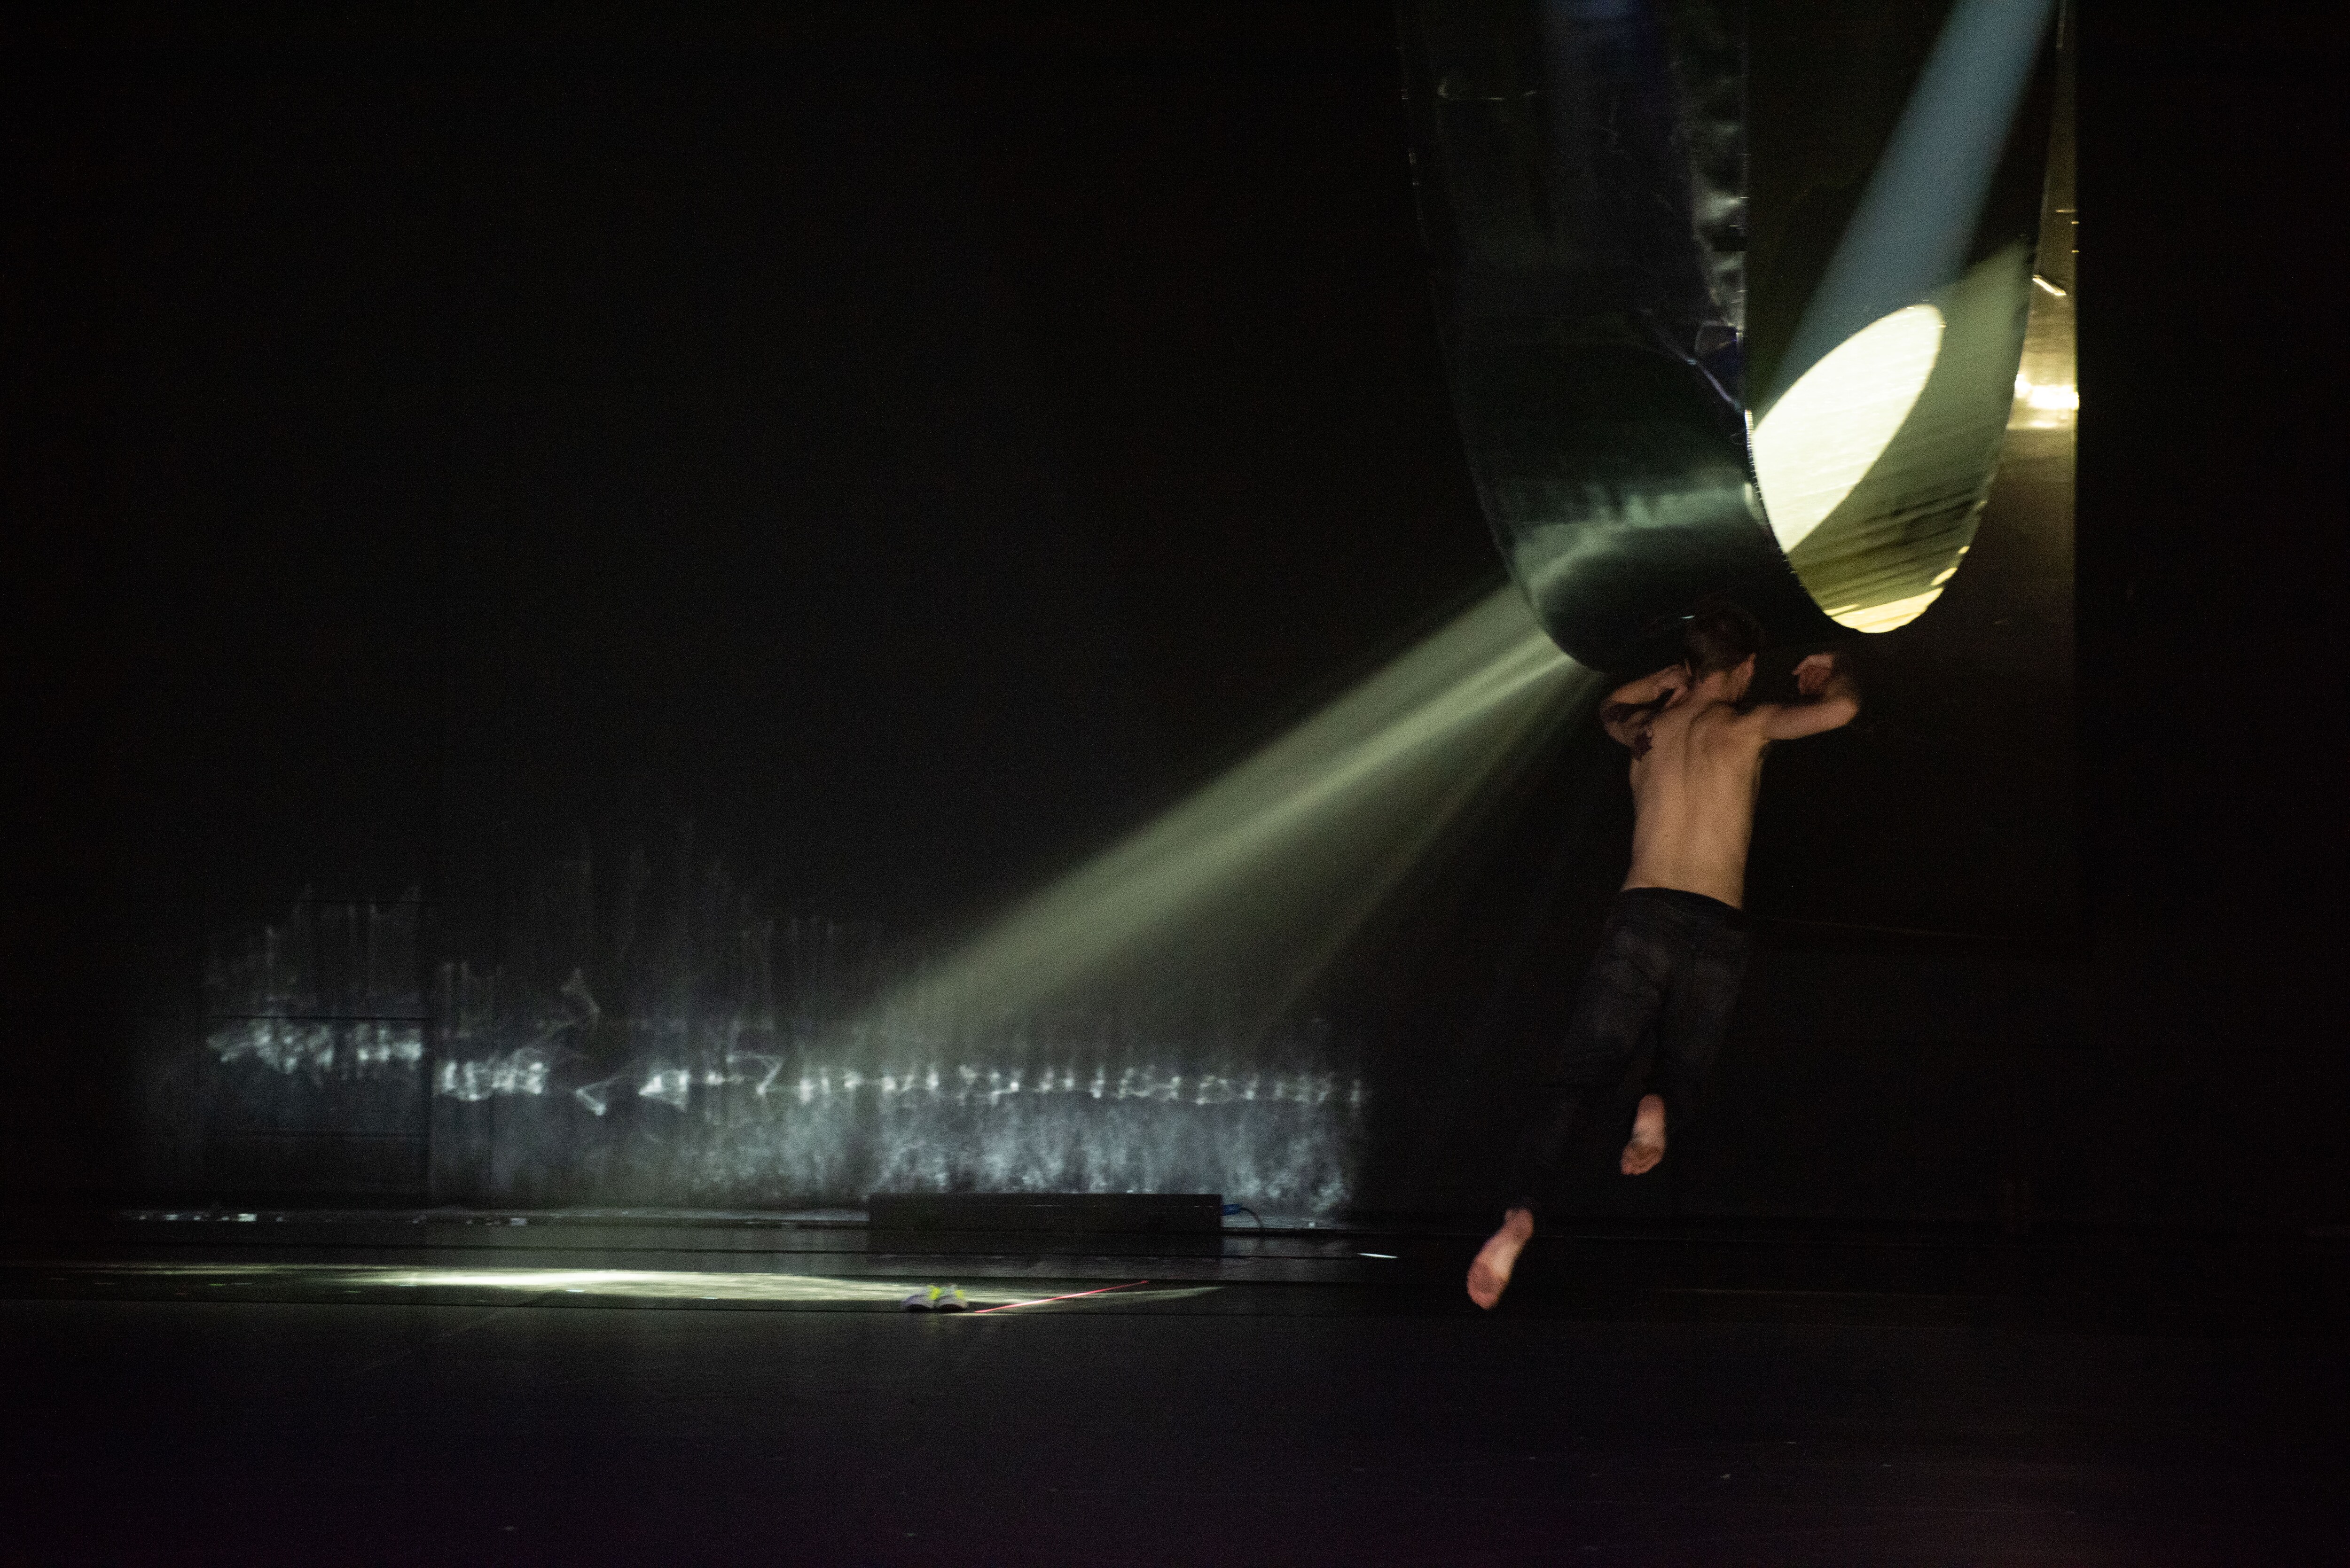 Un danseur sautant face à une structure diffusant un rai de lumière sur scène sombre